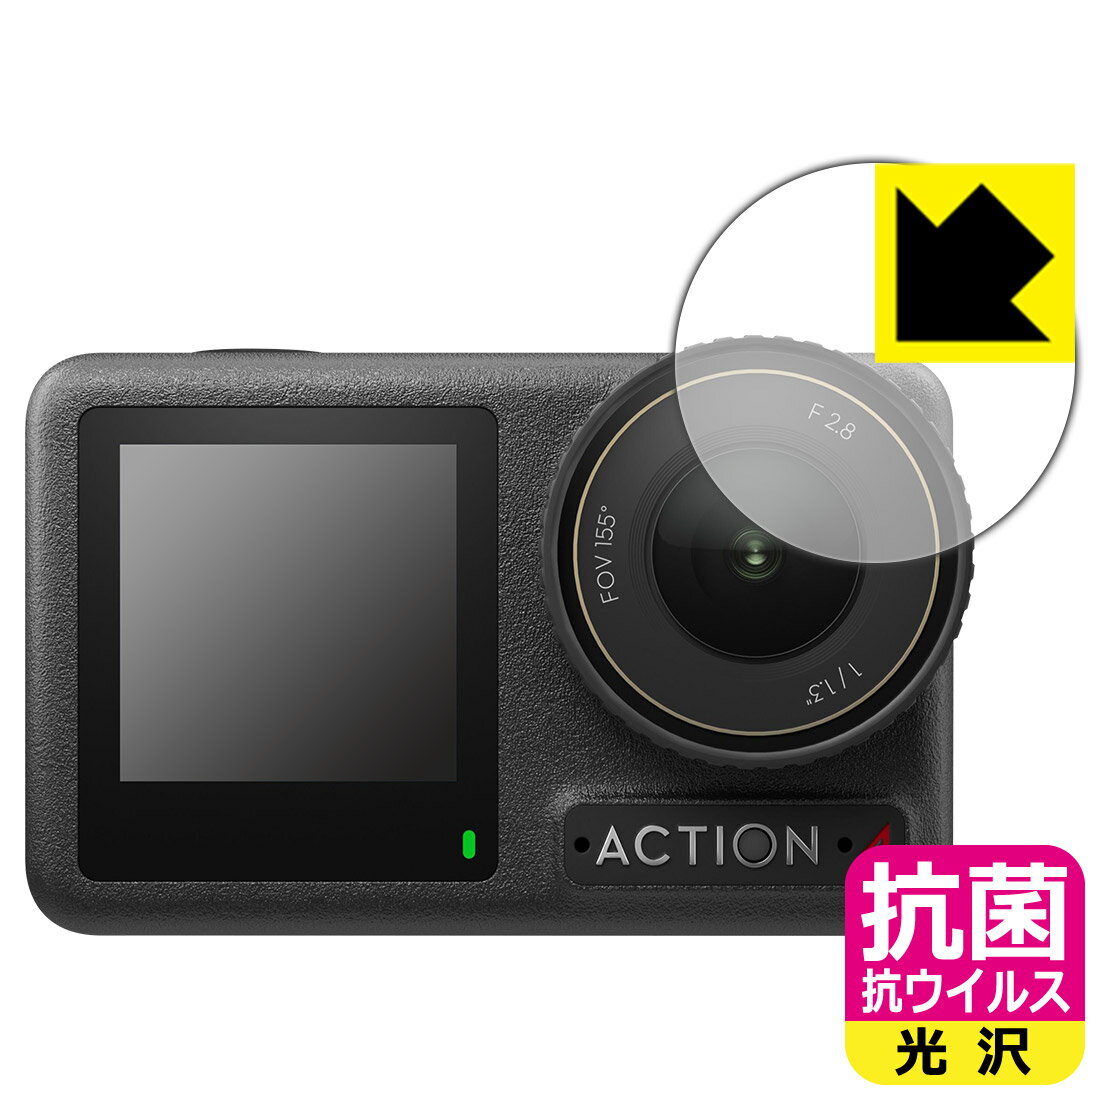 対応機種●対応機種 : DJI Osmo Action 4 レンズ部専用の商品です。　　※レンズ前のガラス面に貼り付けるため、画像に影響が出る可能性がございます。●製品内容 : レンズ部用フィルム1枚・クリーニングワイプ1個●※この機器はレンズ部のコーティングが良いため、フィルムに力を加えると貼り付けた位置から動く場合がございます。簡単に戻せますので、戻してお使いください。●高い除菌性能が長期間持続！『抗菌 抗ウイルス(光沢)の保護フィルム』●富士フイルム Hydro Ag＋抗菌フィルム採用。日本国内の自社工場で製造し出荷しています。 ★貼り付け失敗交換サービス対象商品★ 国内自社工場製造・発送だからできる 安心の製品保証とサポート ■製品保証 お届けした製品が誤っていたり、不具合があった場合などには、お届けから1ヶ月以内にメールにてお問い合わせください。交換等対応させていただきます。[キャンセル・返品（返金・交換）について] ■■貼り付け失敗時の交換サービス■■貼り付けに失敗しても1回だけ無償交換ができます。(失敗したフィルムをお送りいただき、新品に無償交換します。往復の送料のみお客様にご負担をお願いいたします。詳しくは製品に同封の紙をご確認ください) ■■保護フィルム貼り付け代行サービス■■保護フィルムの貼り付け作業に自信がない方には、PDA工房で貼り付け作業を代行いたします。(PDA工房の保護フィルムのみが対象です。詳しくは製品に同封の紙をご確認ください) 抗菌 抗ウイルス【光沢】保護フィルム 素材説明 ■Hydro Ag＋抗菌フィルムを採用！高い除菌性能が長期間持続！富士フイルム Hydro Ag＋抗菌フィルム採用。Hydro Ag＋は、細菌だけでなく、ウイルスやカビなど、さまざまな微生物の増殖を抑制します。またSIAA（抗菌製品技術協議会）認証マークも取得しており、高い安全性も確認できています。※全ての微生物への効果を保証するものではありません。※本製品は医薬品・医薬部外品ではありません。抗菌性能JIS Z 2801 準拠（35℃100％）黄色ブドウ球菌（グラム陽性菌）：99.99％死滅（24時間）大腸菌（グラム陰性菌）：99.99％死滅（24時間）耐薬品性耐次亜塩素酸（ピューラックス）：外観、抗菌性能に劣化無し耐アルコール（IPA）：外観、抗菌性能に劣化無し清拭耐性乾拭き5000回：外観、抗菌性能に劣化無し水拭き5000回：外観、抗菌性能に劣化無し■高級感あふれる光沢と画質を損なわない透明度！貼っていることを意識させないほどの高い透明度に、高級感あふれる光沢・クリアな仕上げとなります。動画視聴や画像編集など、機器本来の発色を重視したい方におすすめです。■気泡の入りにくい特殊な自己吸着タイプ接着面は気泡の入りにくい特殊な自己吸着タイプです。素材に柔軟性があり、貼り付け作業も簡単にできます。また、はがすときにガラス製フィルムのように割れてしまうことはありません。貼り直しが何度でもできるので、正しい位置へ貼り付けられるまでやり直すことができます。■安心の日本製富士フイルム Hydro Ag＋抗菌フィルム採用。日本国内の弊社工場で加工している Made in Japan です。安心の品質をお届けします。 【ポスト投函送料無料】商品は【ポスト投函発送 (追跡可能メール便)】で発送します。お急ぎ、配達日時を指定されたい方は以下のクーポンを同時購入ください。【お急ぎ便クーポン】　プラス110円(税込)で速達扱いでの発送。お届けはポストへの投函となります。【配達日時指定クーポン】　プラス550円(税込)で配達日時を指定し、宅配便で発送させていただきます。【お急ぎ便クーポン】はこちらをクリック【配達日時指定クーポン】はこちらをクリック